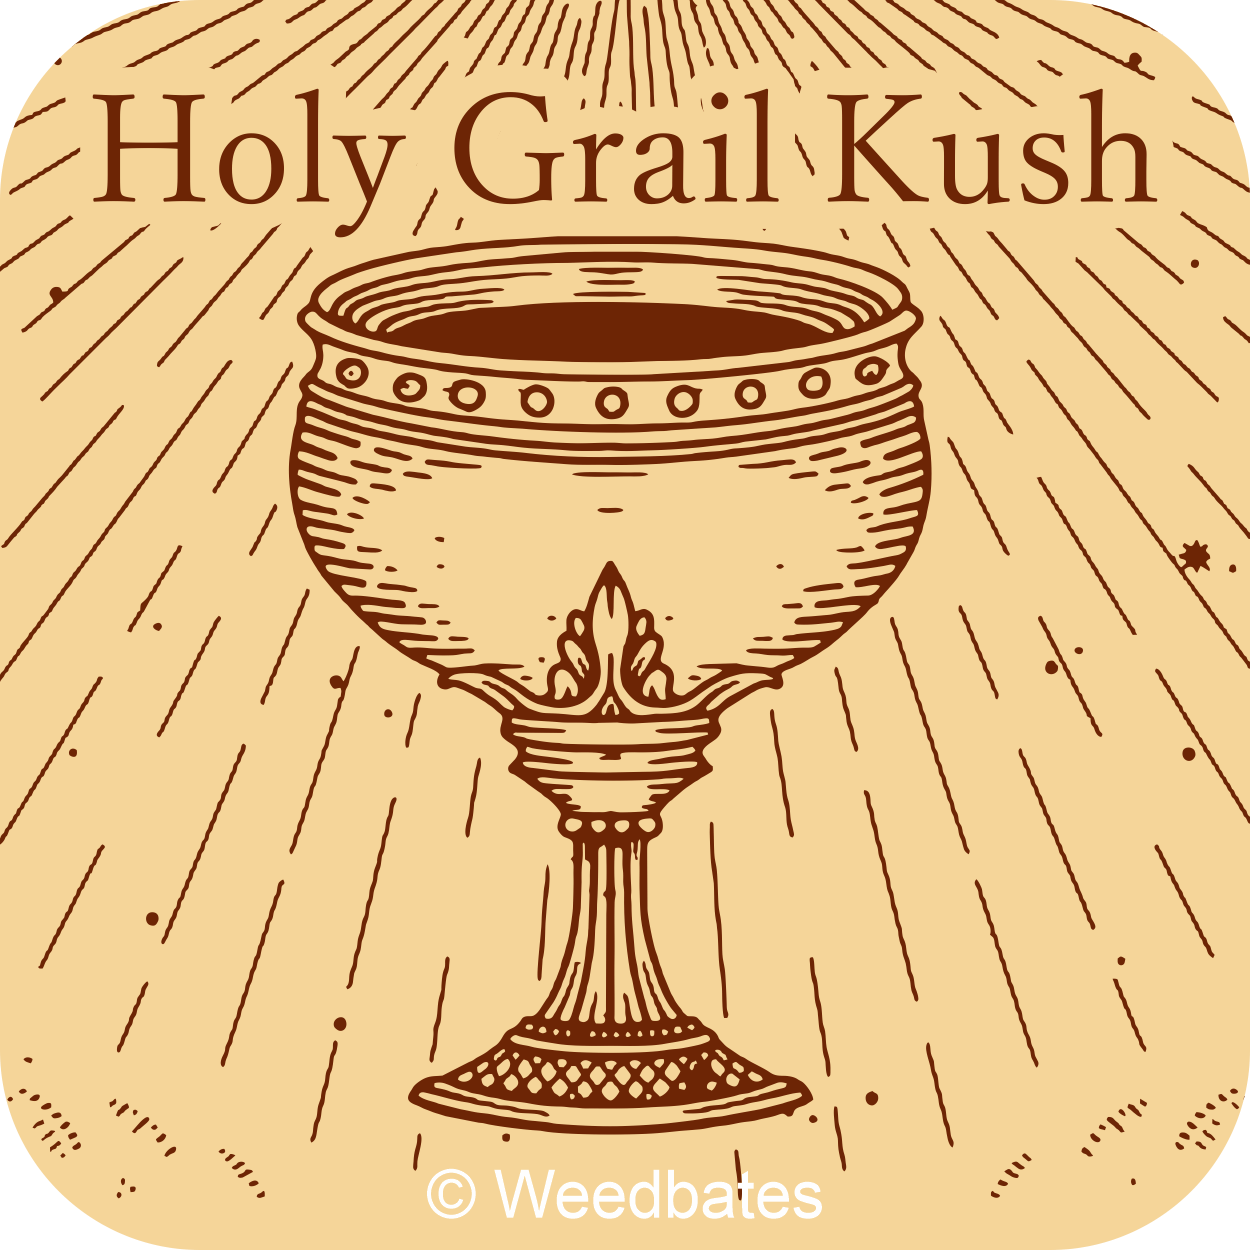 Holy Grail Kush cannabis strain